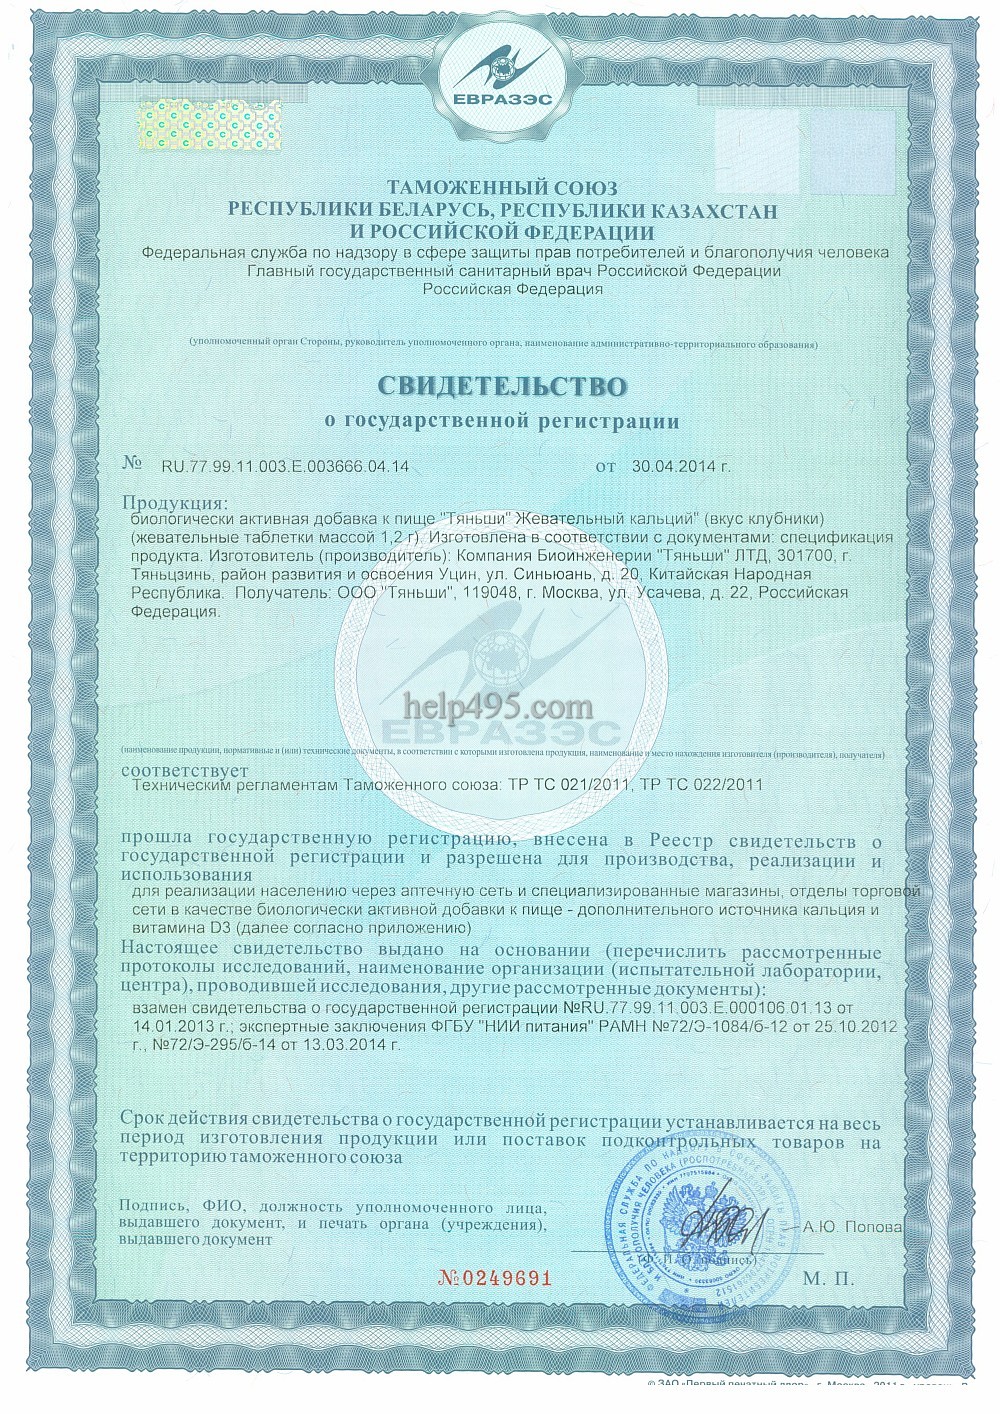 1-ая стр. сертификата препарата: 

Жевательный кальций Тяньши